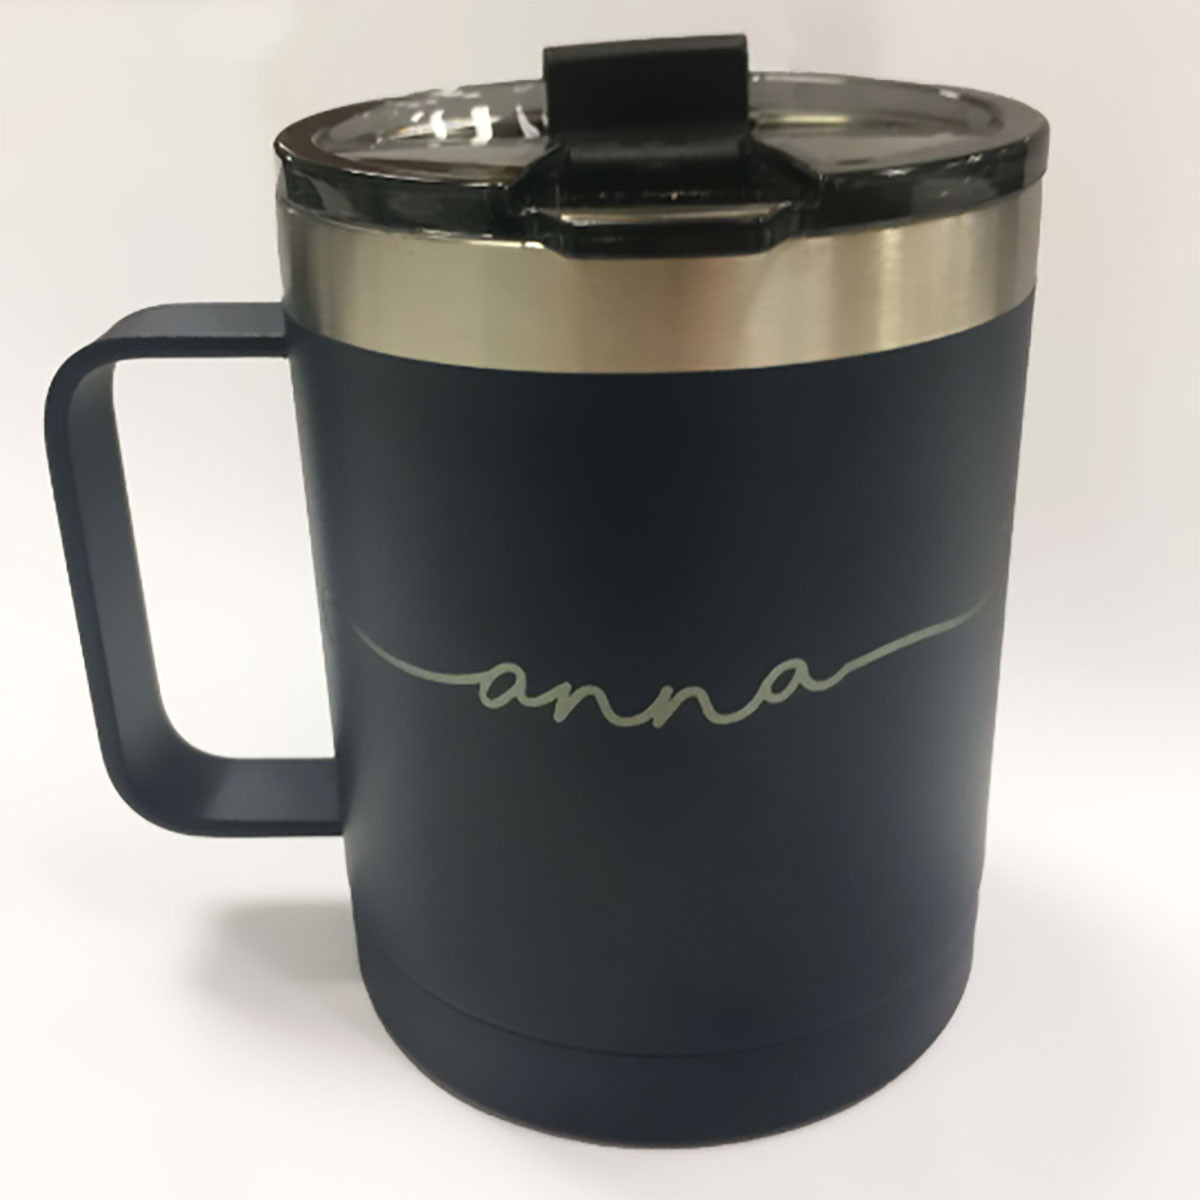 RTIC 20 Oz Travel Cup Coffee Mug Laser Engraved Monogram Coffee